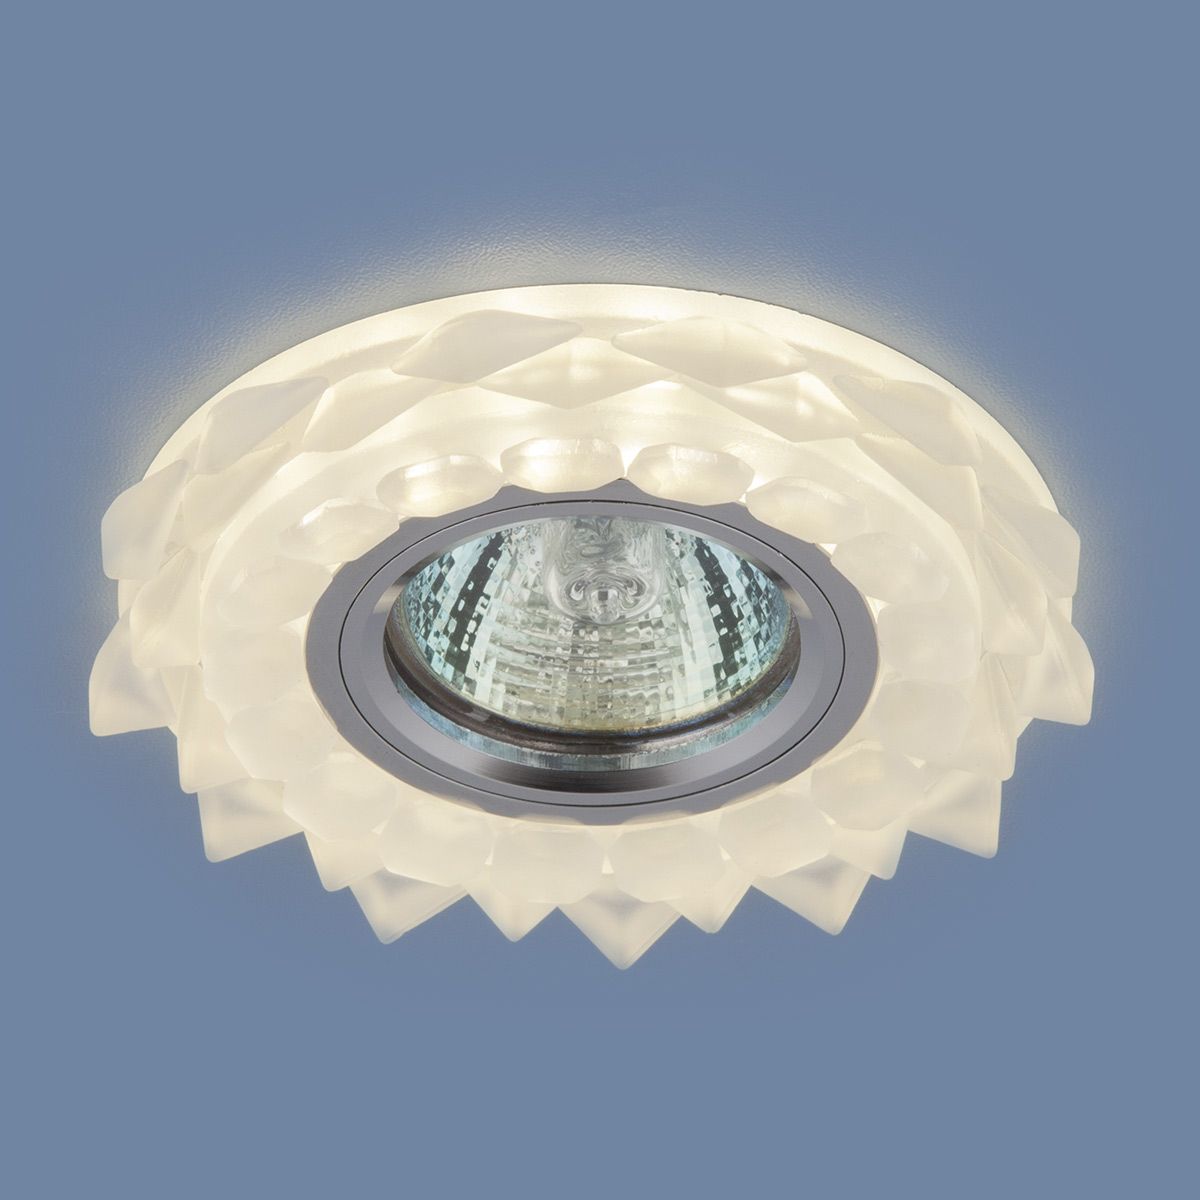 Точечный светильник с LED подсветкой Elektrostandard 2208-2209-2210 2209 MR16 Matt Ice матовый лед. Фото 3